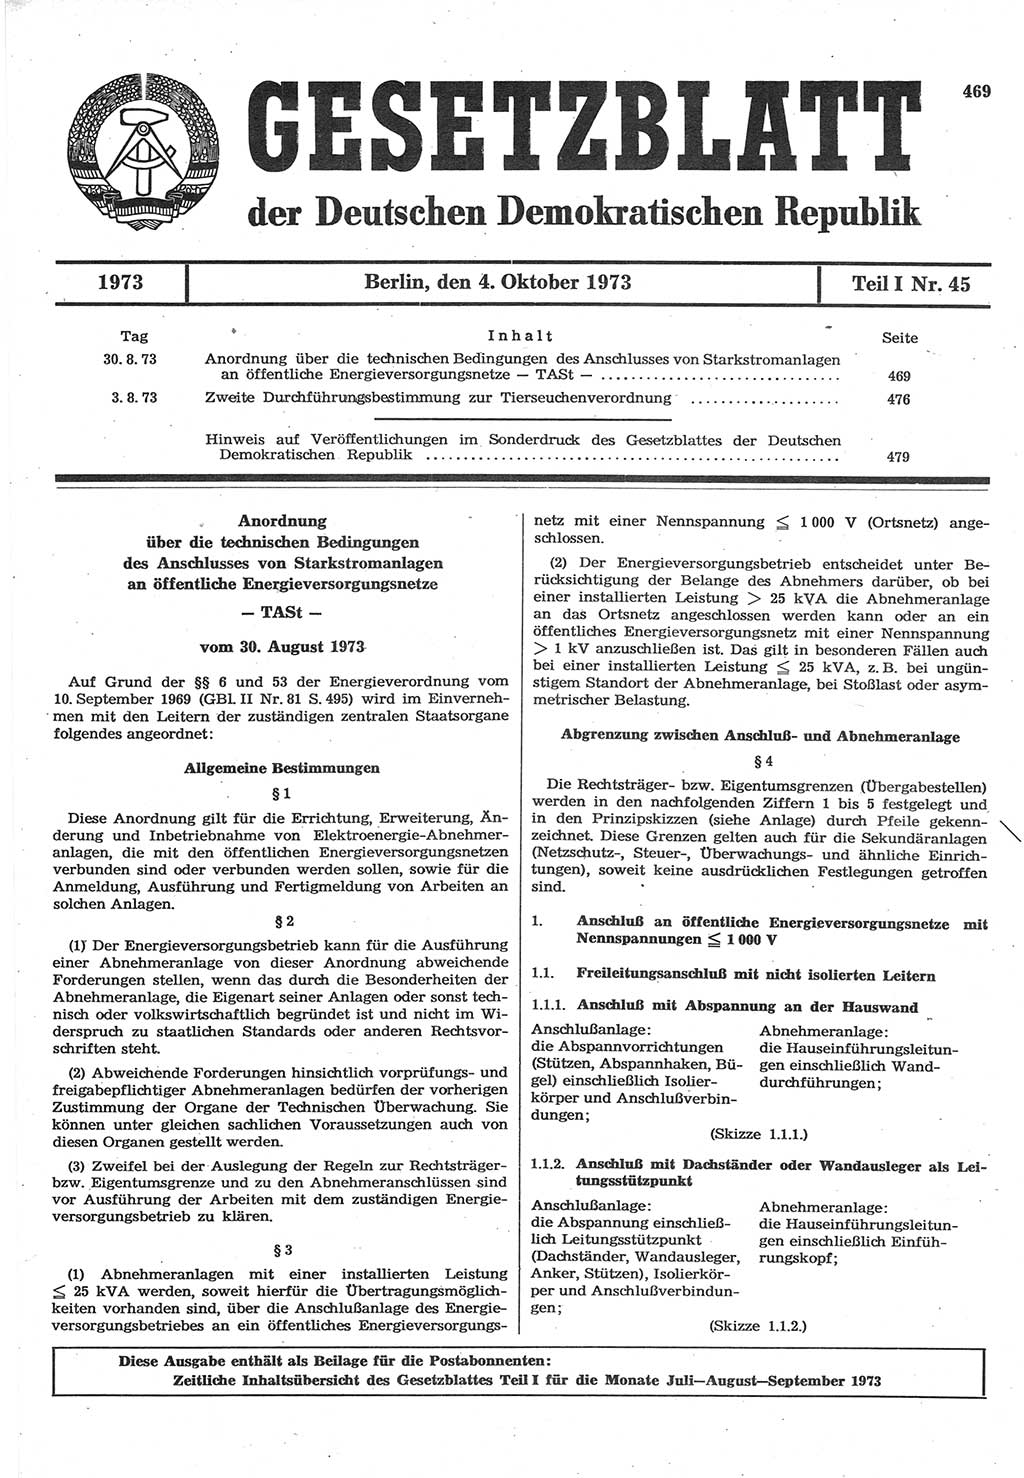 Gesetzblatt (GBl.) der Deutschen Demokratischen Republik (DDR) Teil Ⅰ 1973, Seite 469 (GBl. DDR Ⅰ 1973, S. 469)